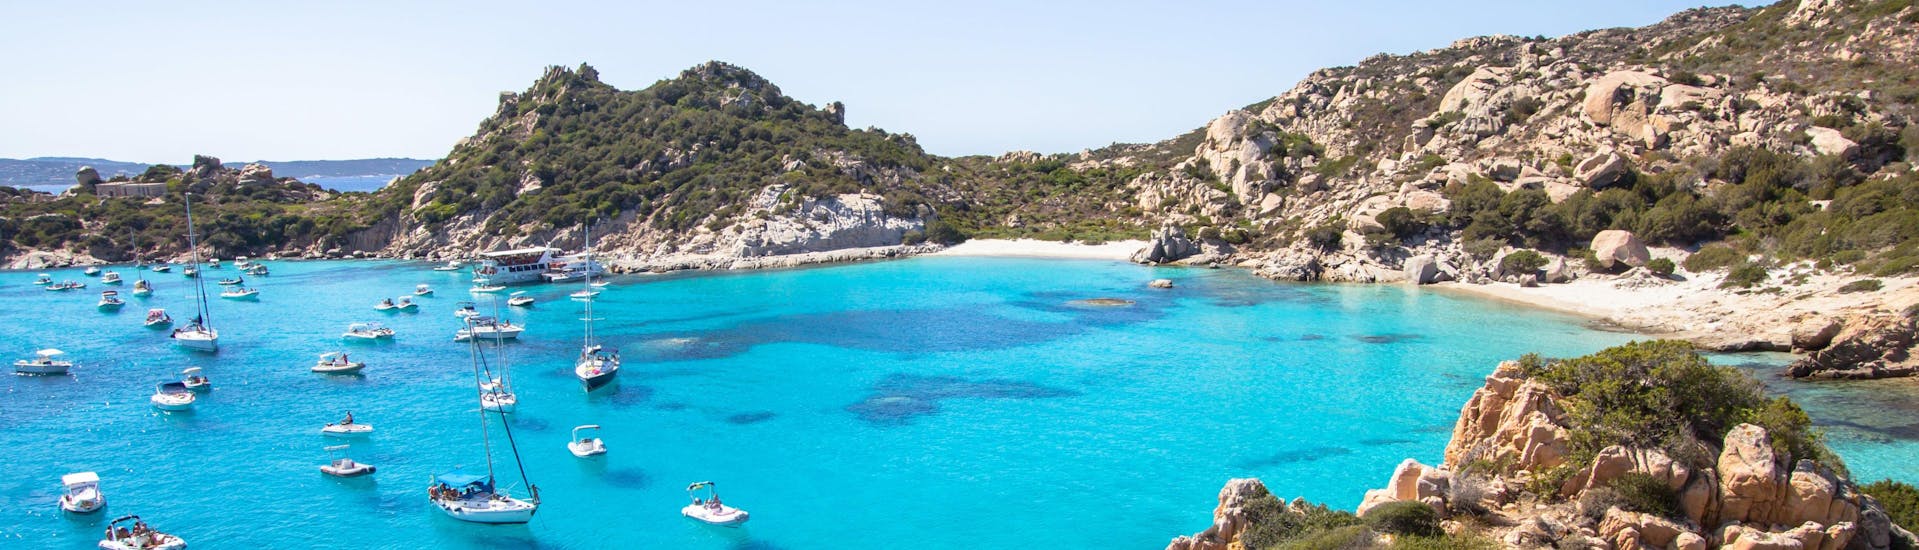 Un'immagine di Cala Corsara sull'arcipelago della Maddalena, uno dei tanti luoghi che si possono visitare in un giro in barca in Sardegna.